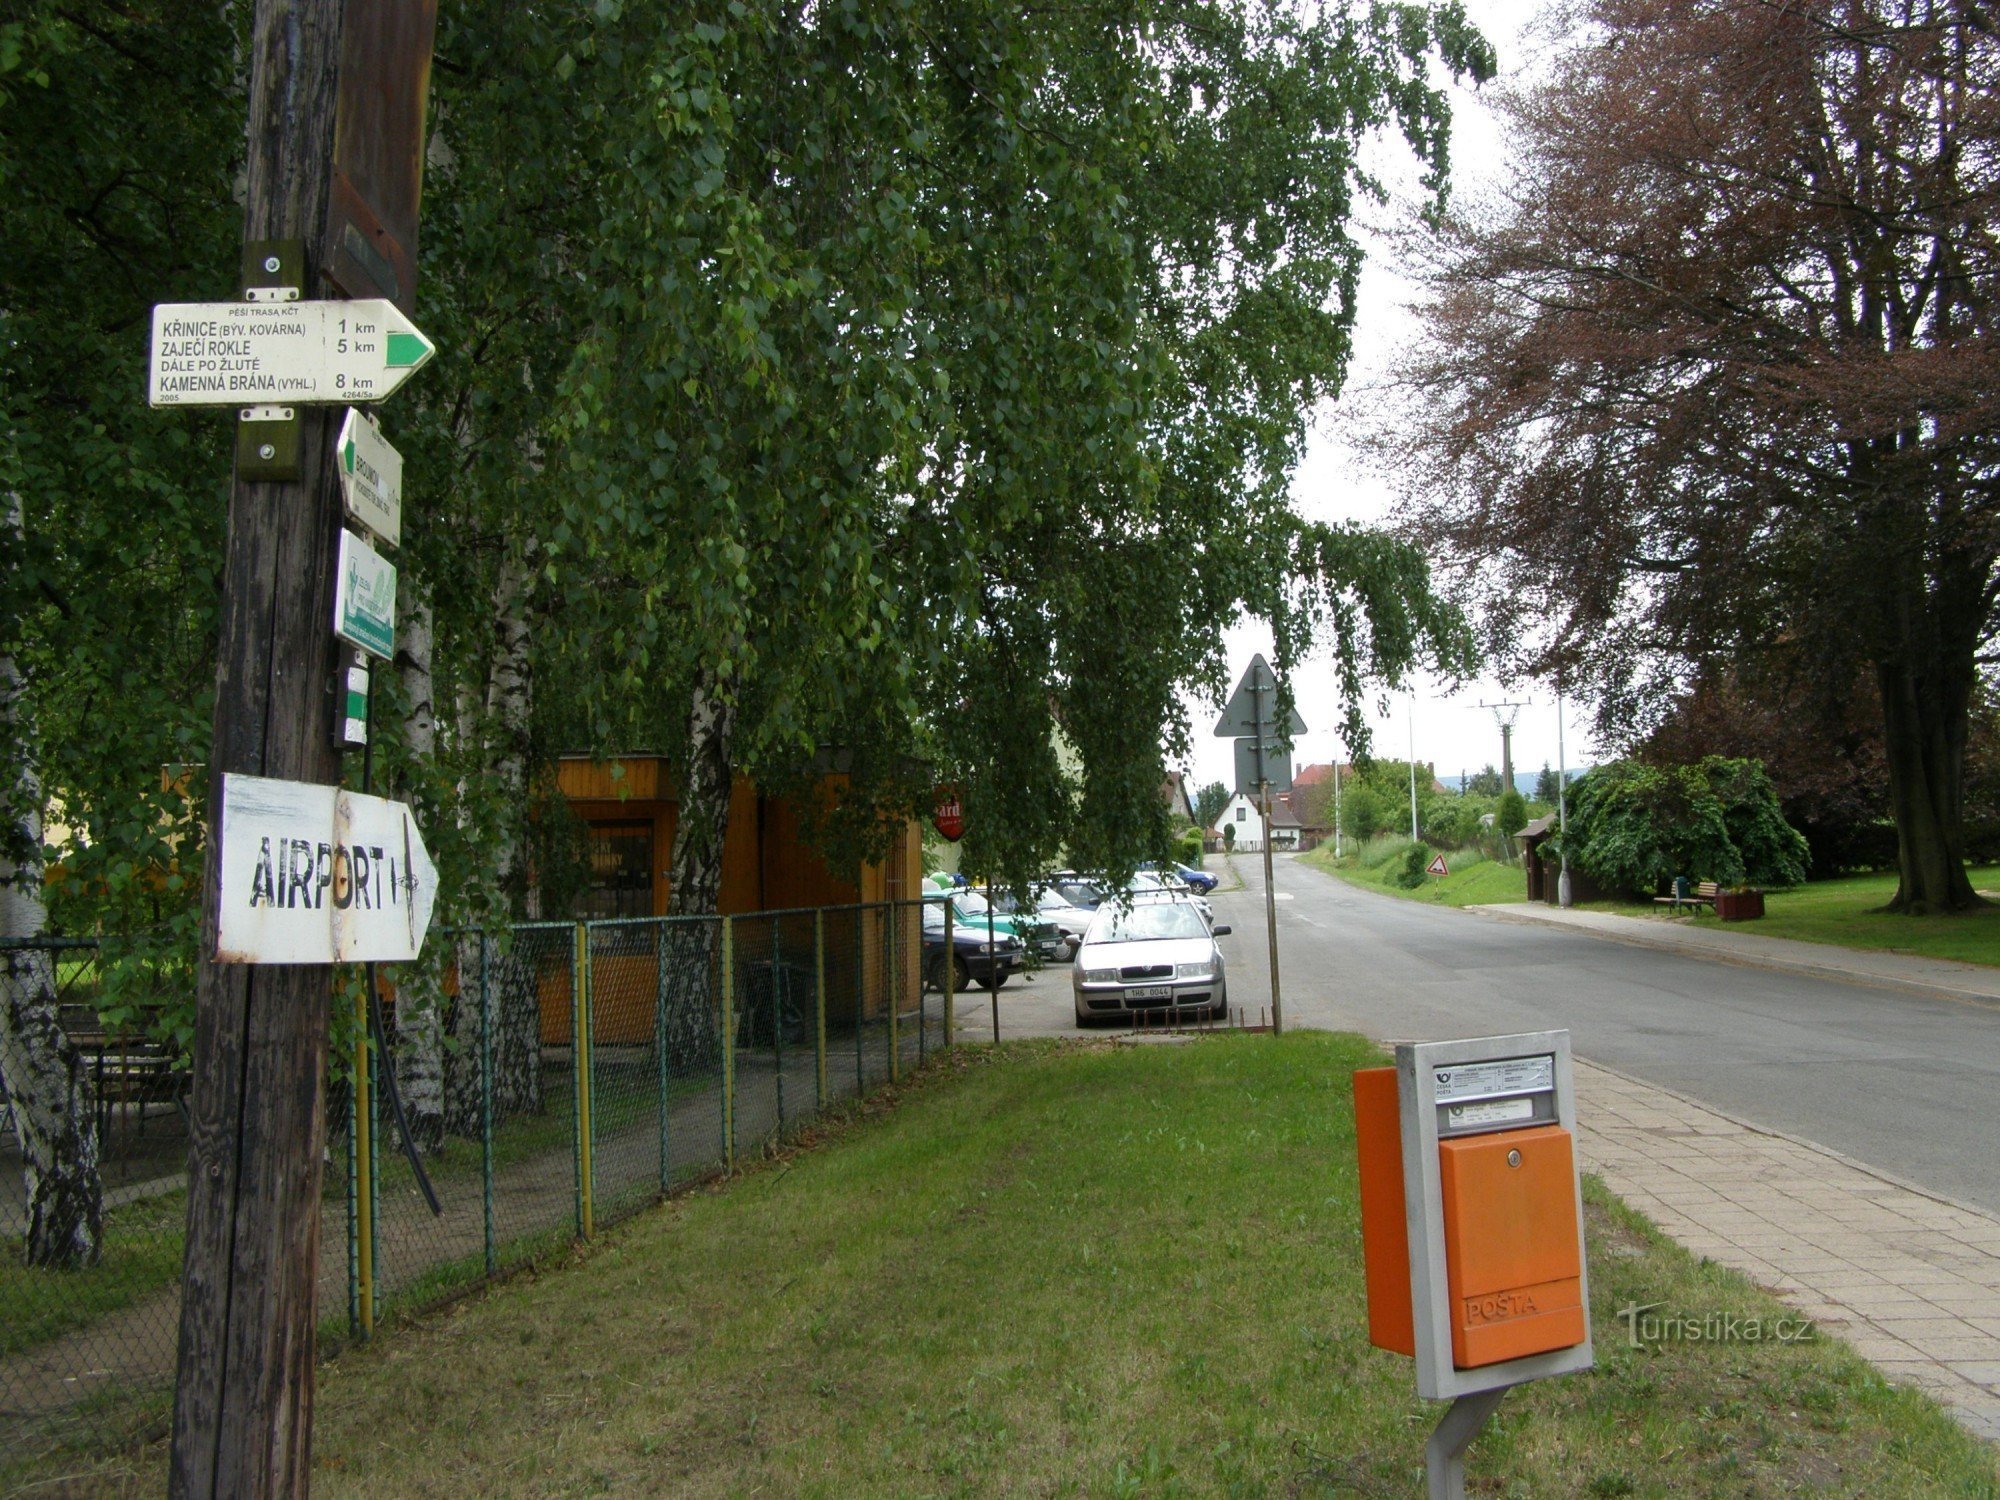 encrucijada turística Broumov - cerca de la iglesia de madera (cerca del hospital)